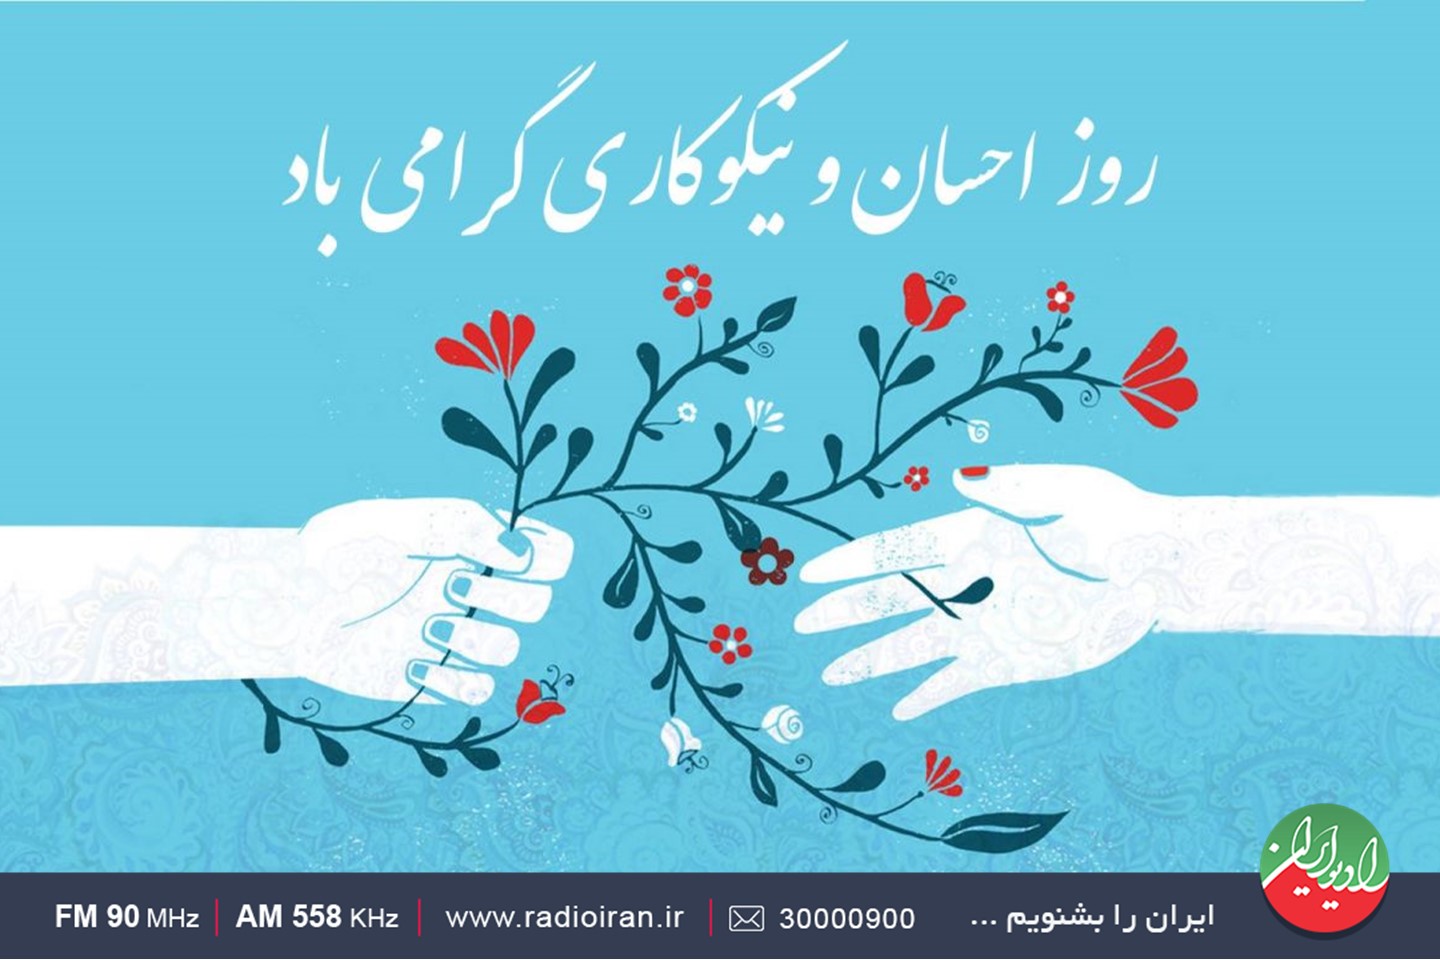 رادیو ایران  و روز احسان و نیکوکاری